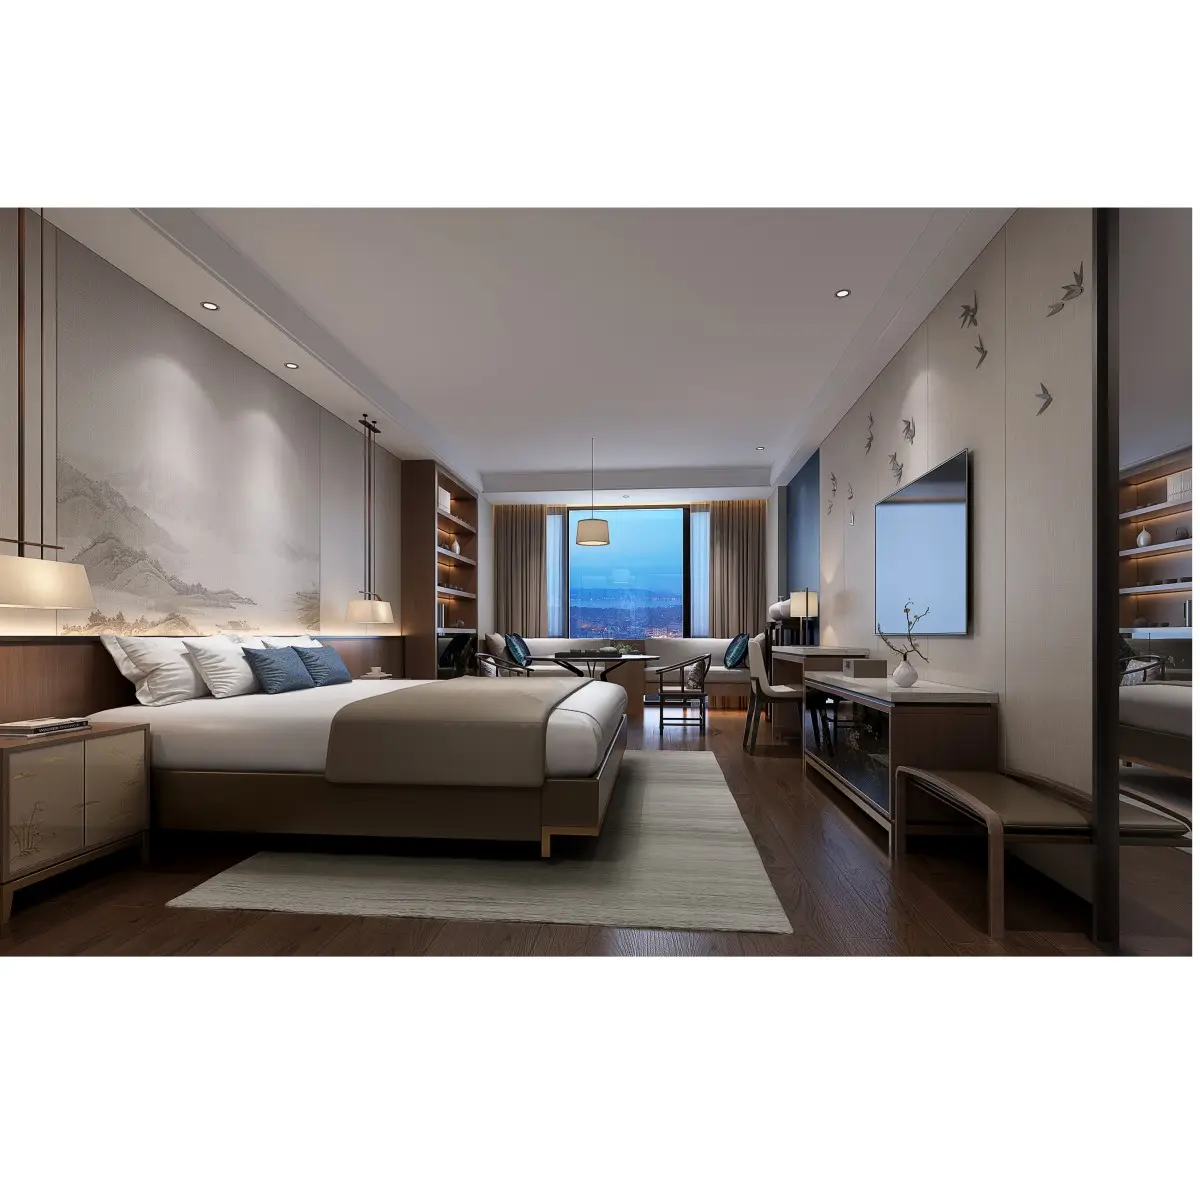 Индивидуальная 3, 4, 5-звездочная кровать, мебель для гостиничных номеров, набор мебели для гостиничных номеров из массива дерева, мебель для гостиничных номеров